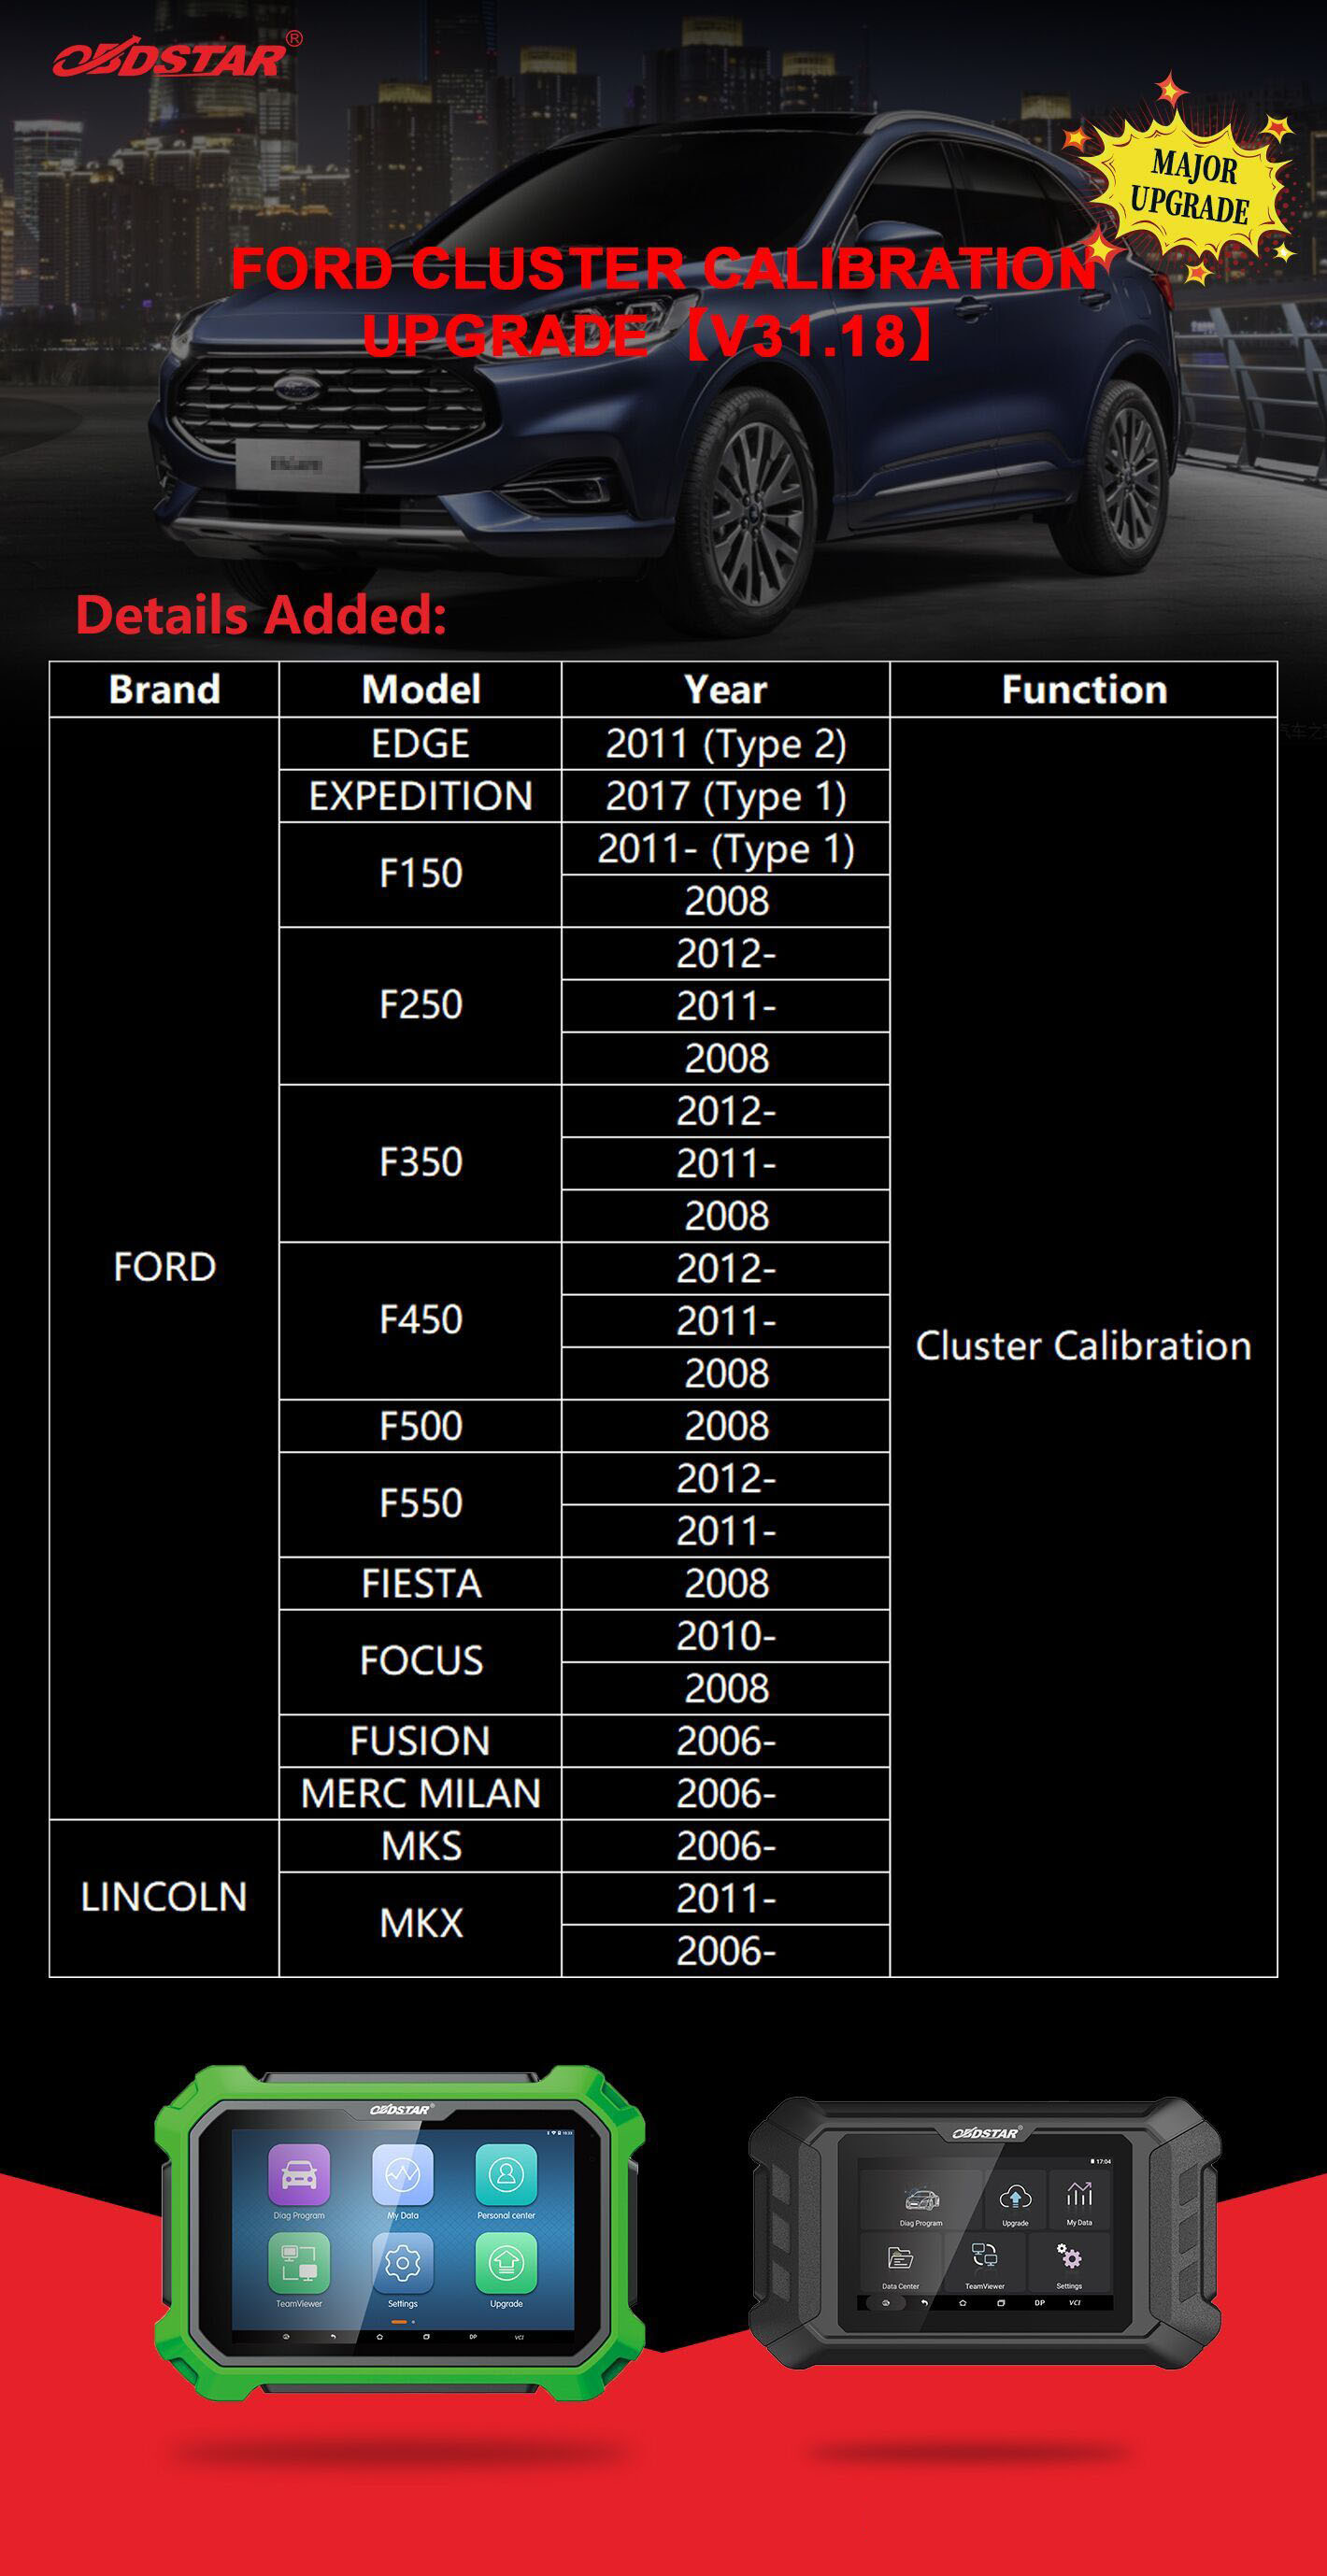 OBDSTAR: Ford cluster calibration upgrade